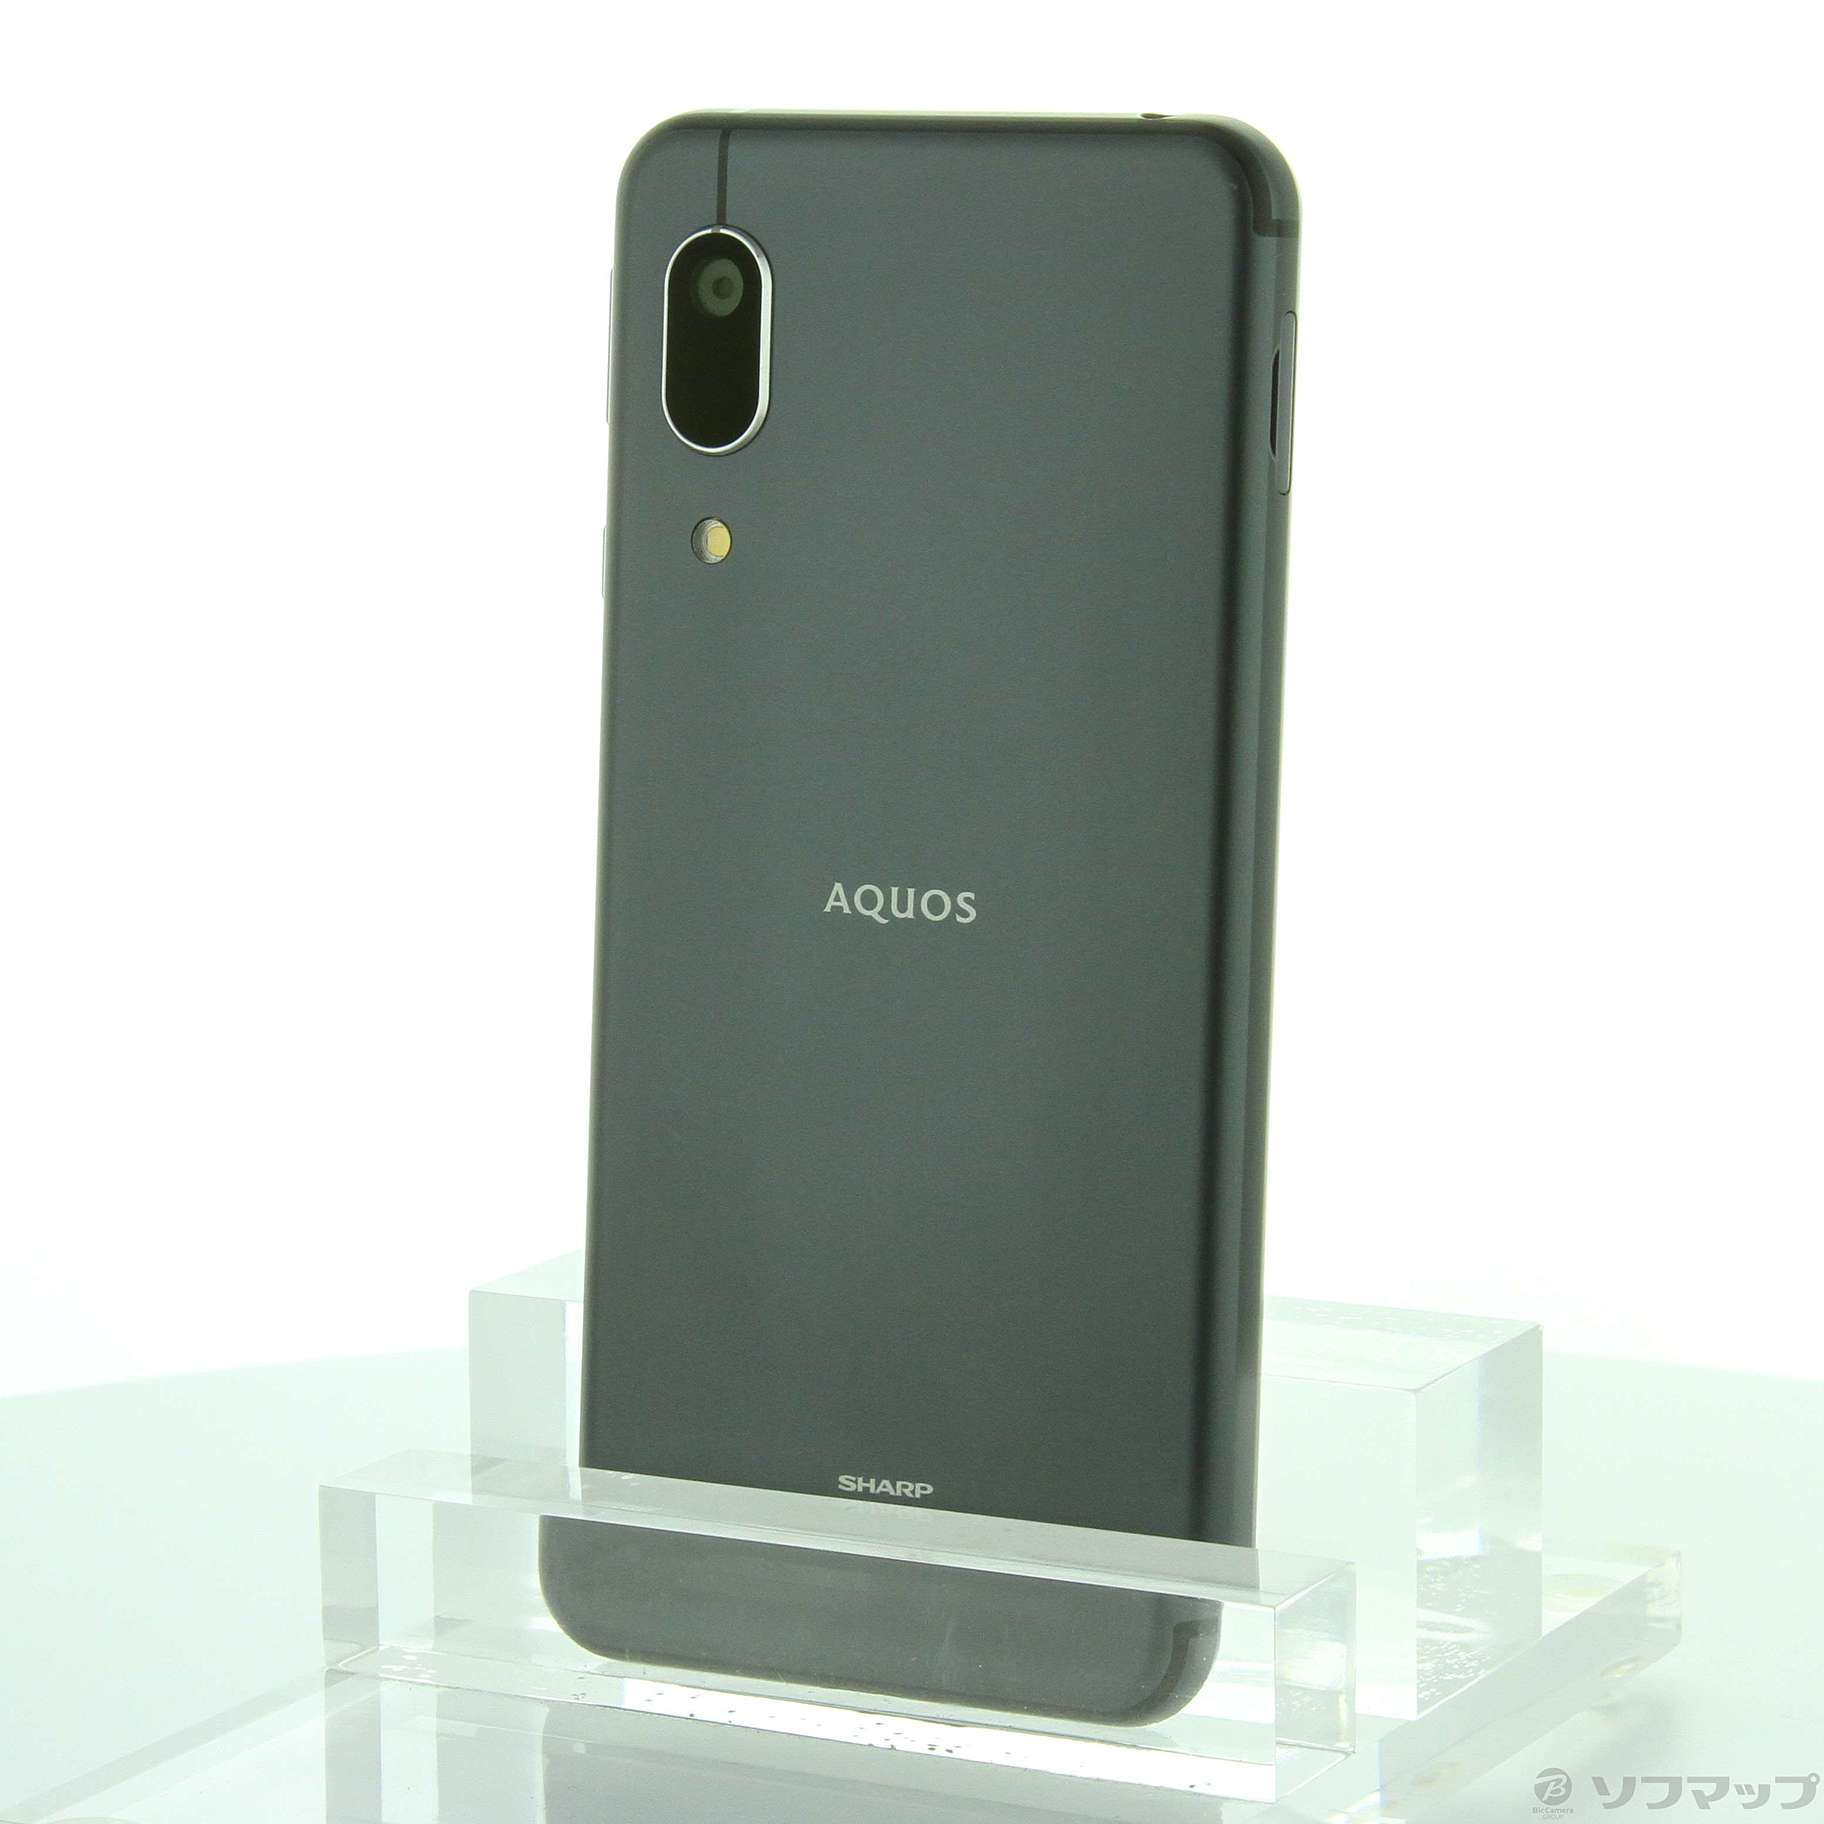 SHARP AQUOS sense3 basic ブラック shv48 - 携帯電話